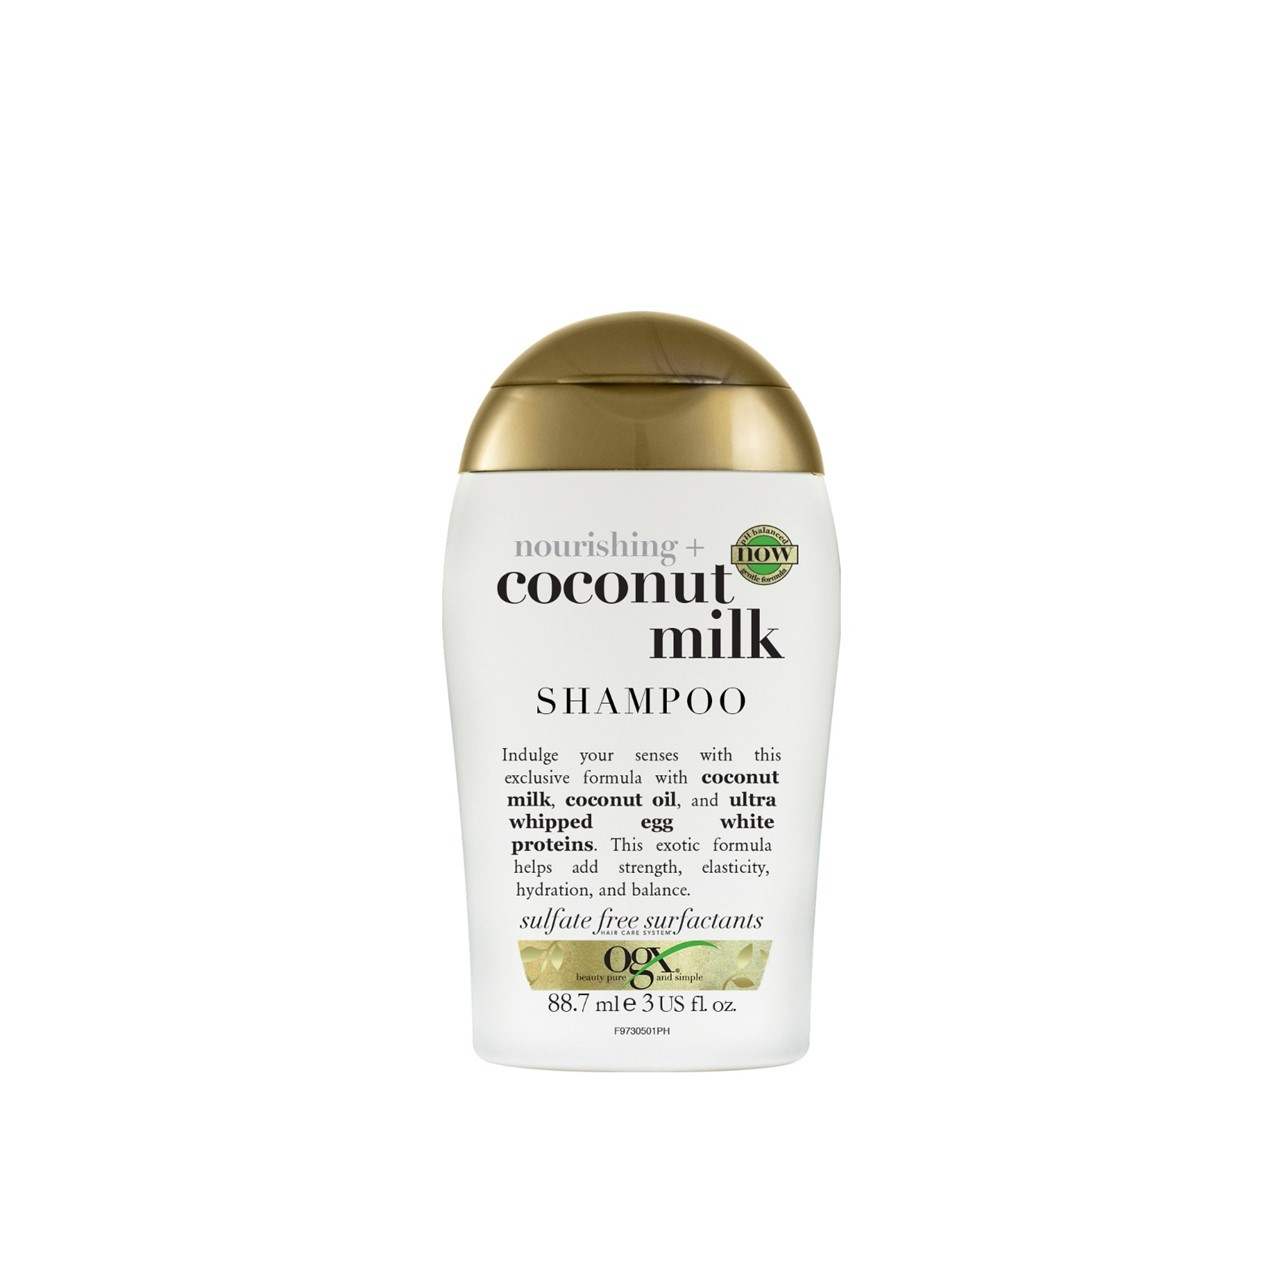 ogx szampon coconut